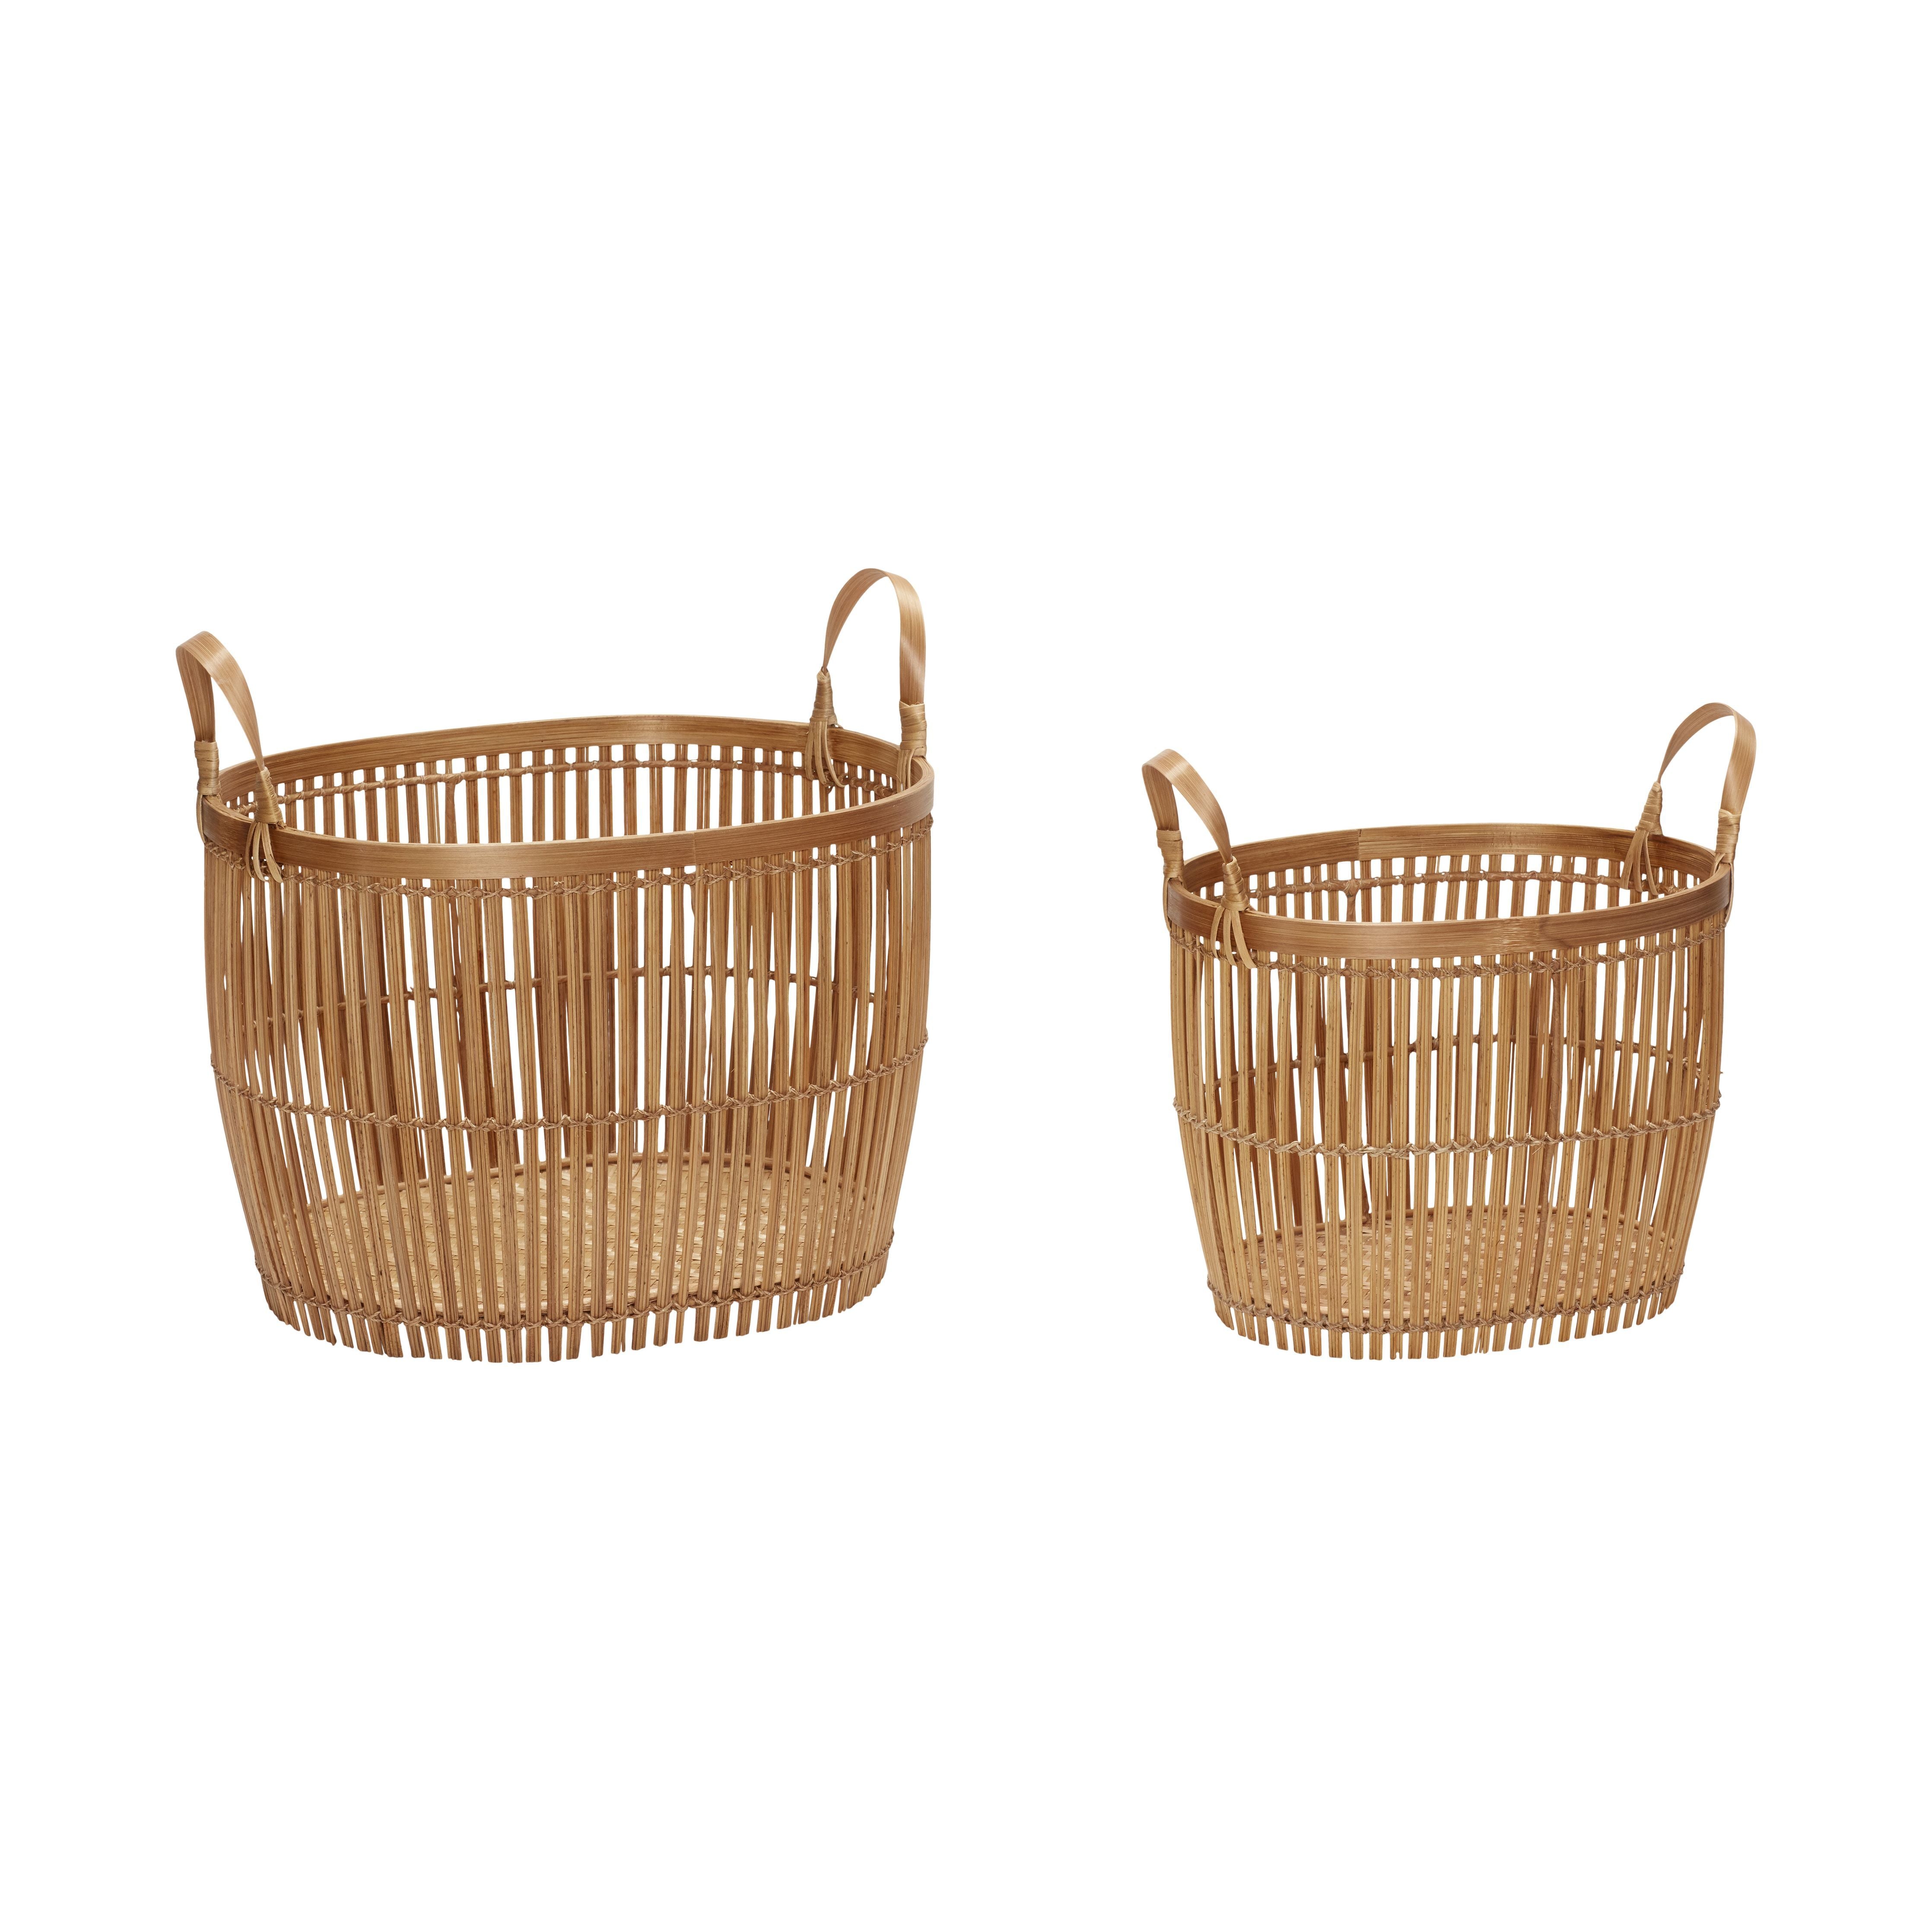 Hübsch Vantage Basket With Hank Round Bamboo Nature Set med 2, 37/38x36/47x29/33 cm